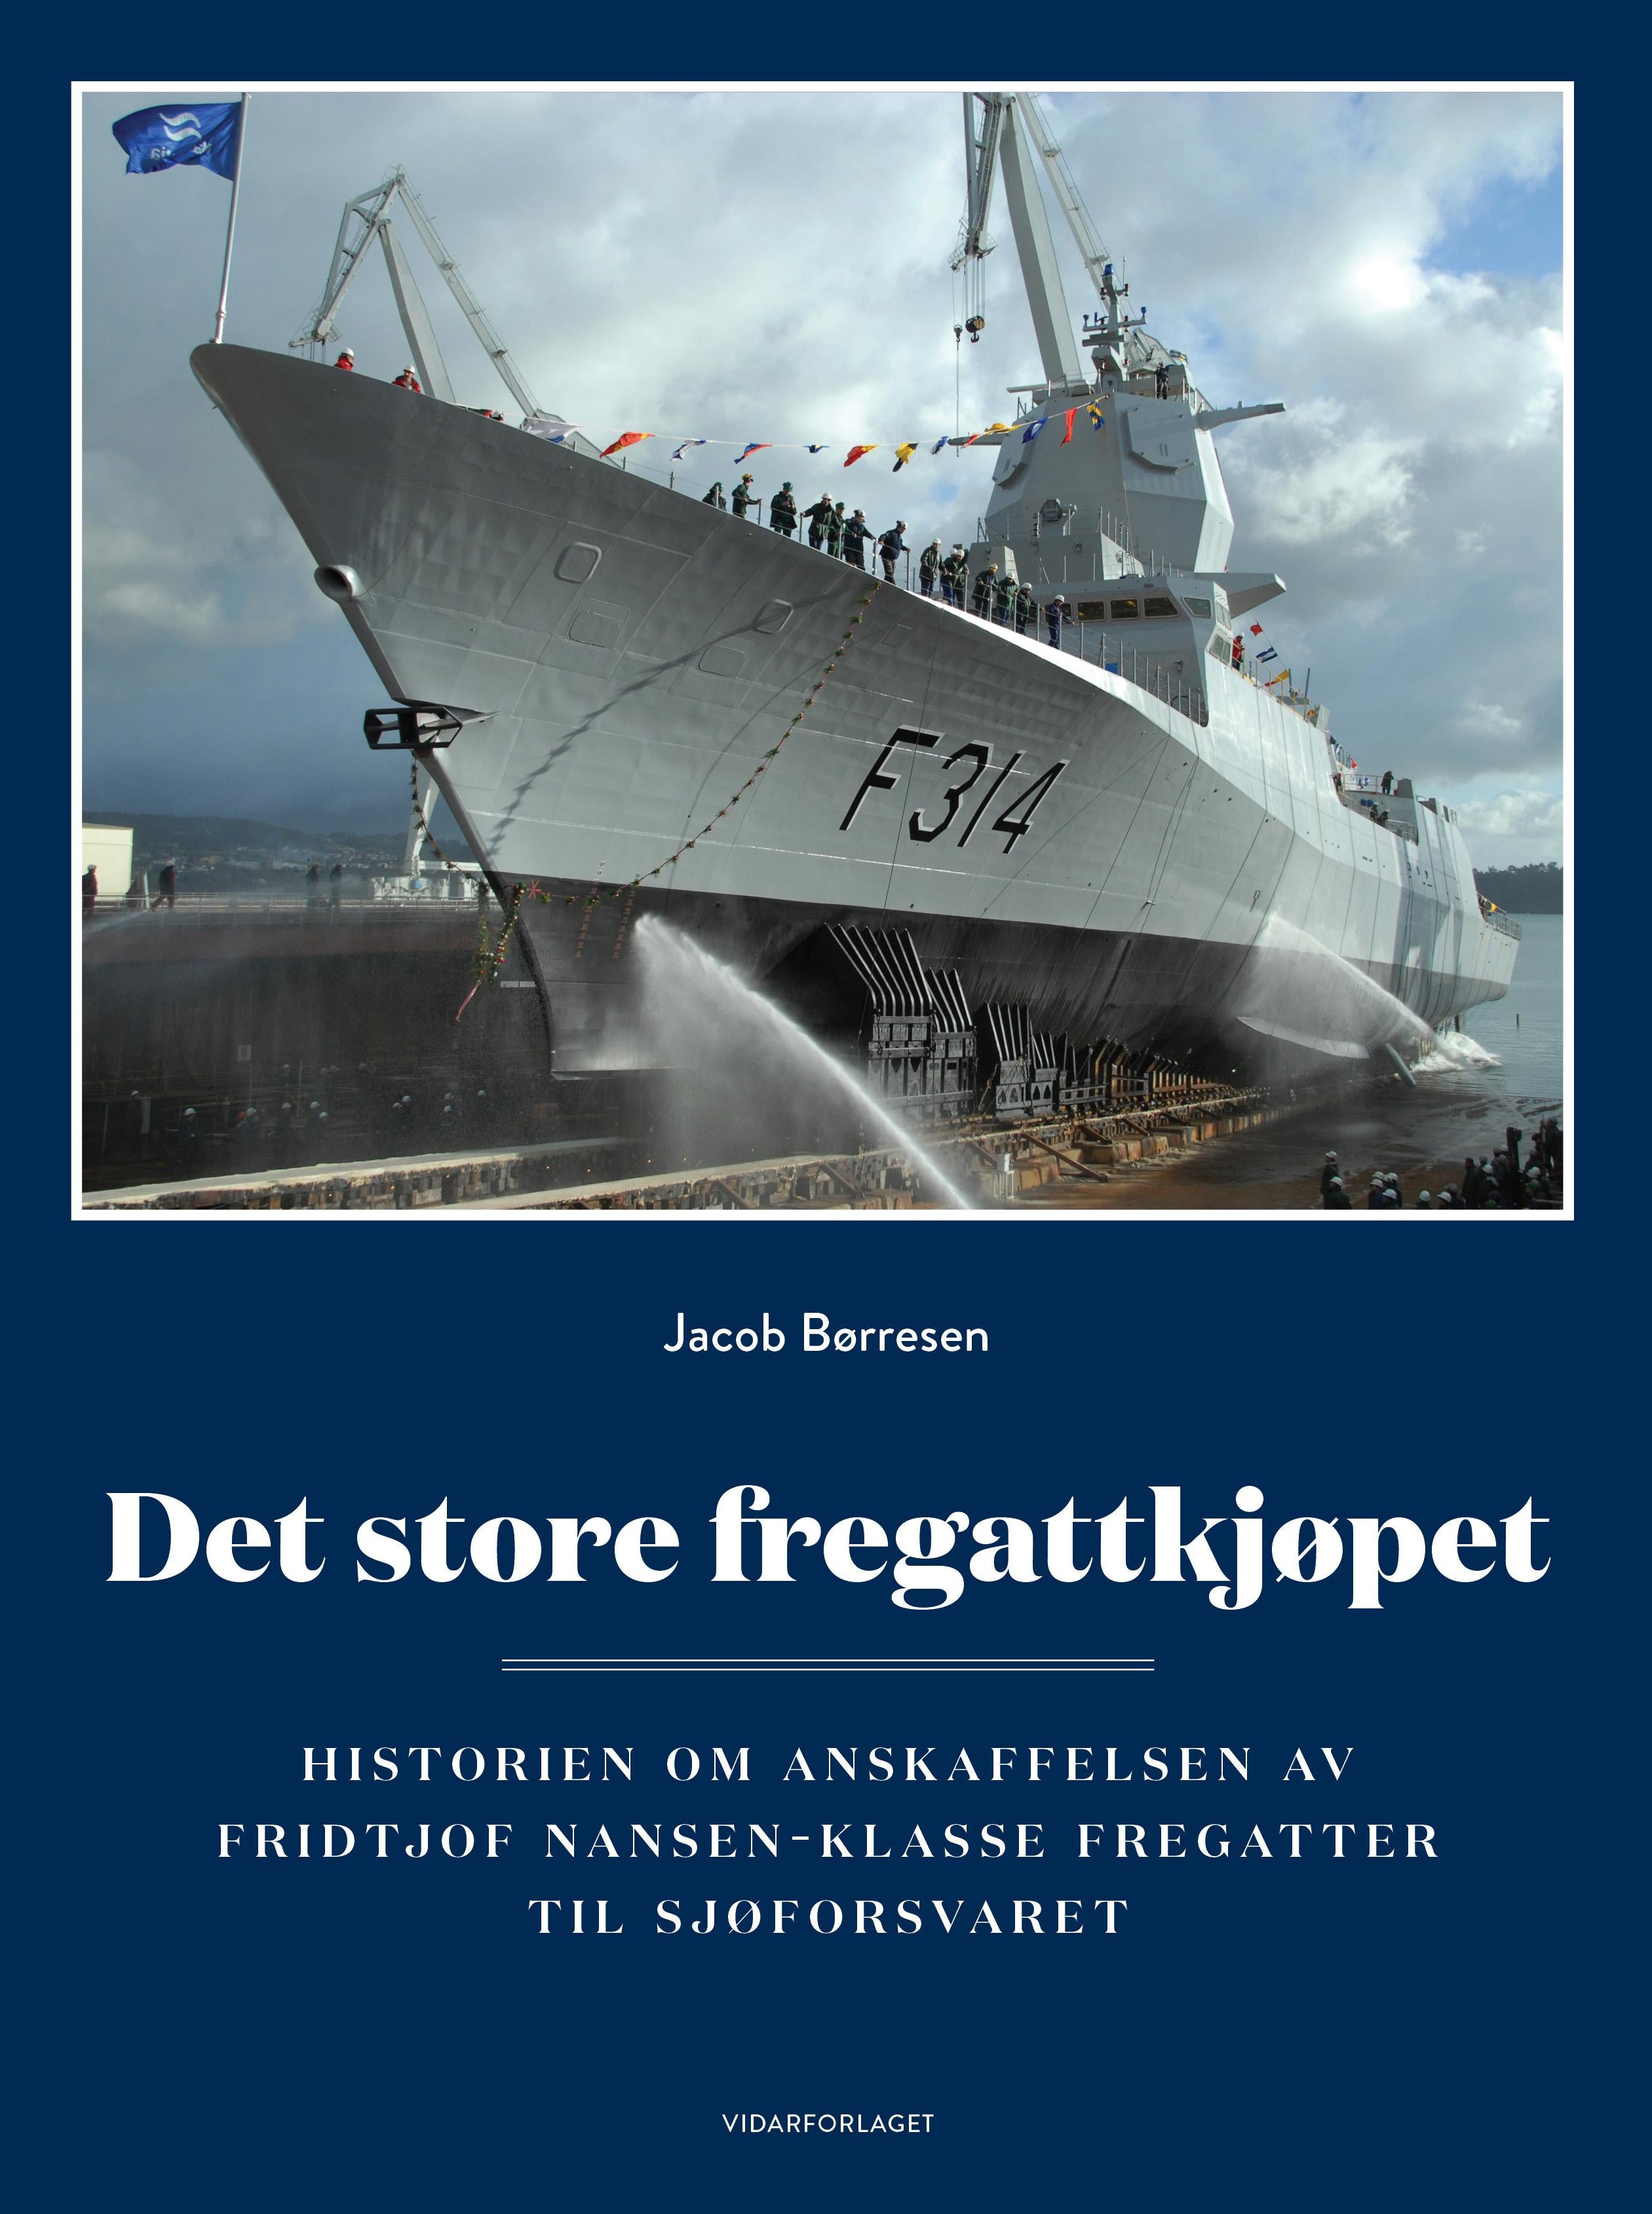 Det store fregattkjøpet: historien om anskaffelsen av Fridtjof Nansen-klasse fregatter til Sjøforsvaret